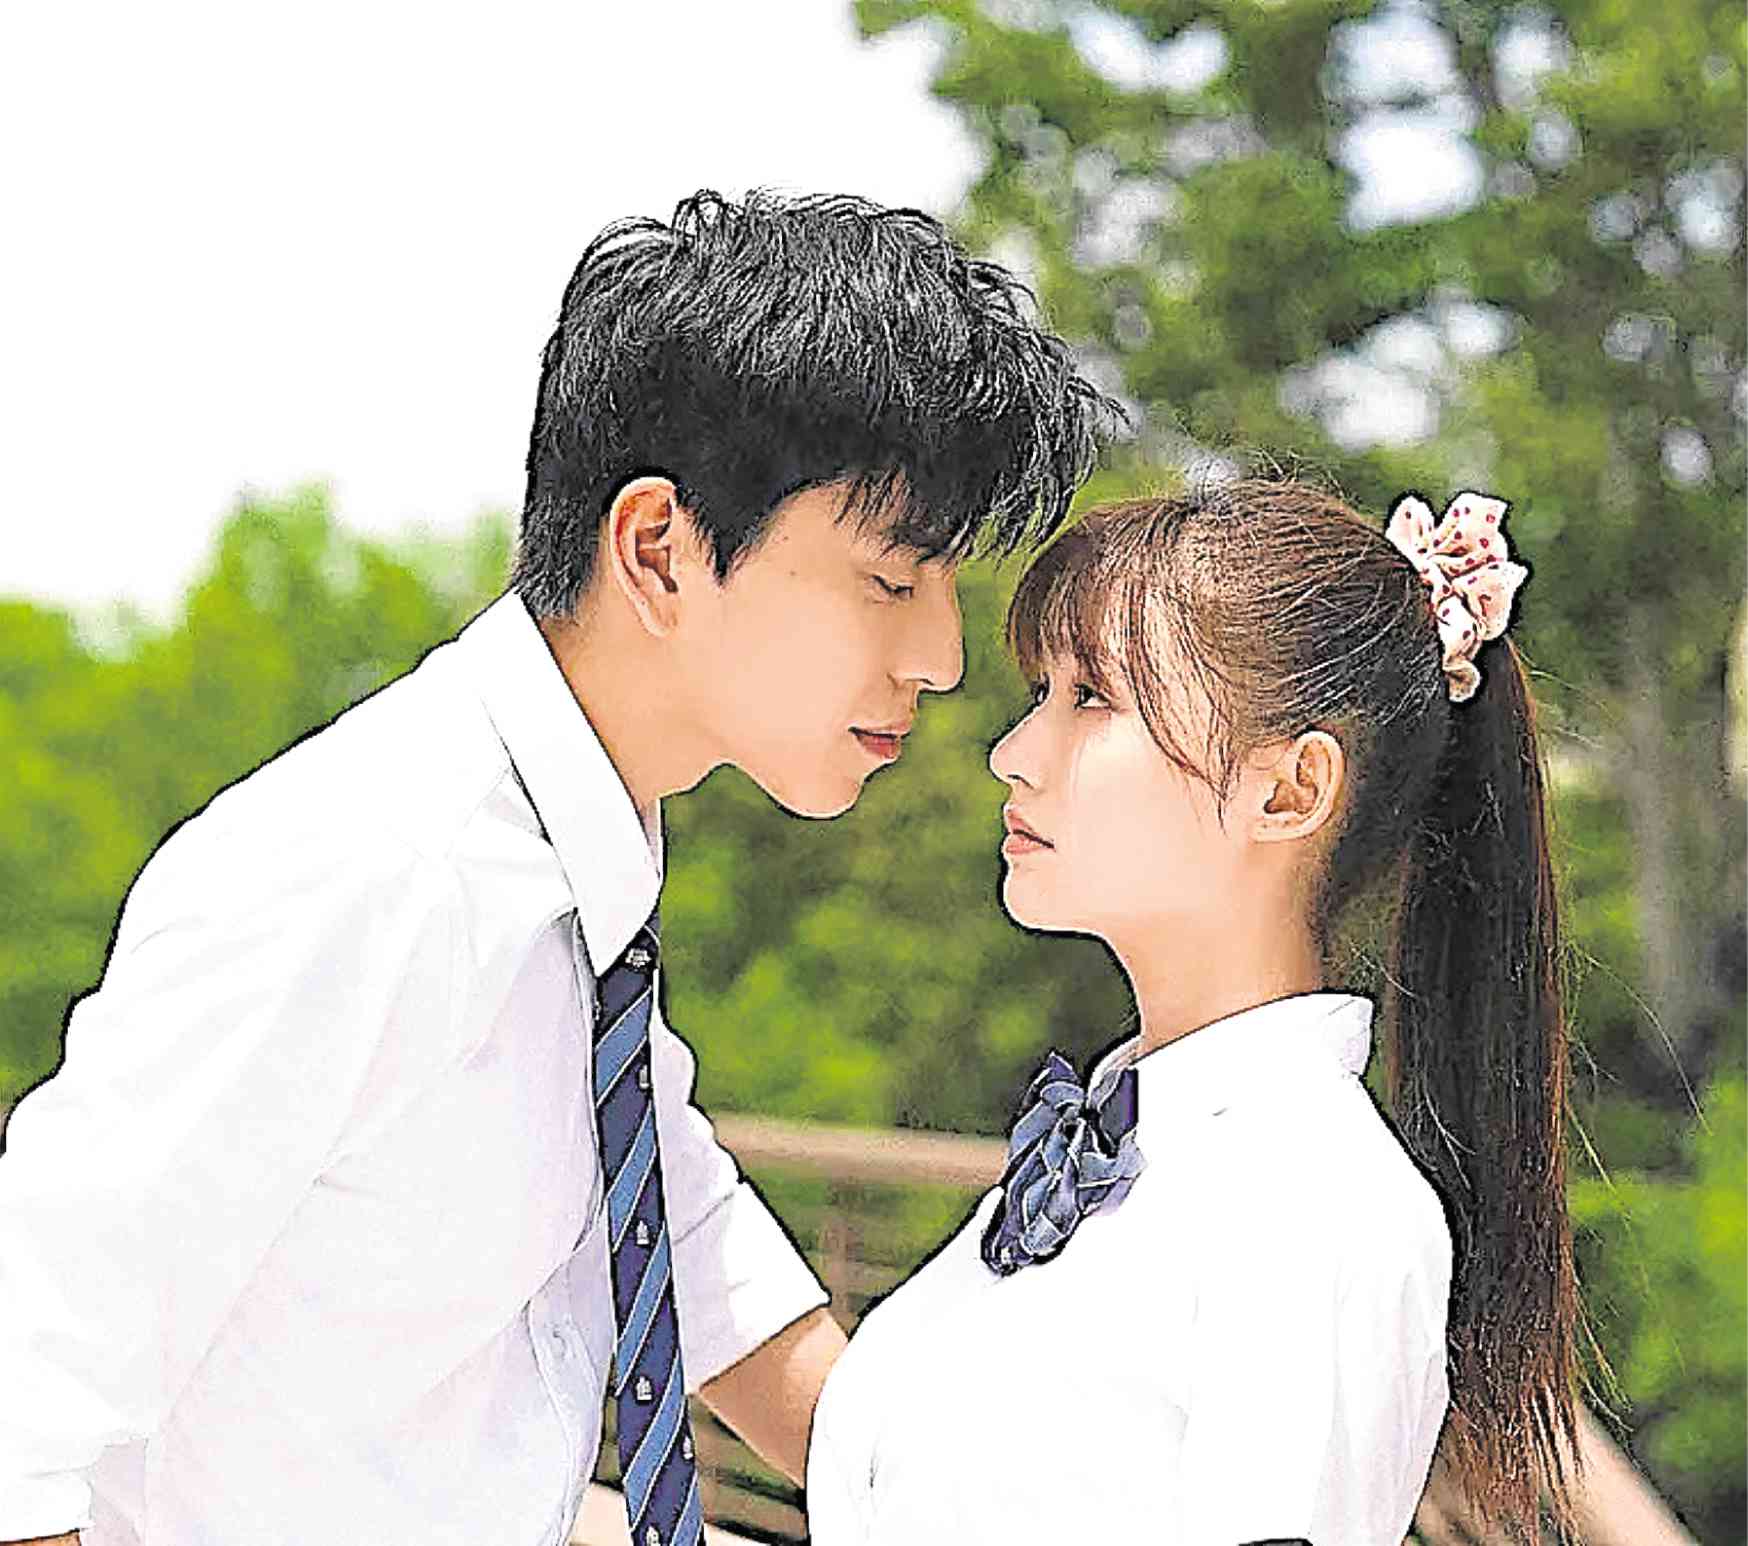 Принц влюбился в девушку. Влюбиться с первого поцелуя дорама. Дорама влюбленность 2021 Корея историческая. Любовь с первого поцелуя дорама 2019.